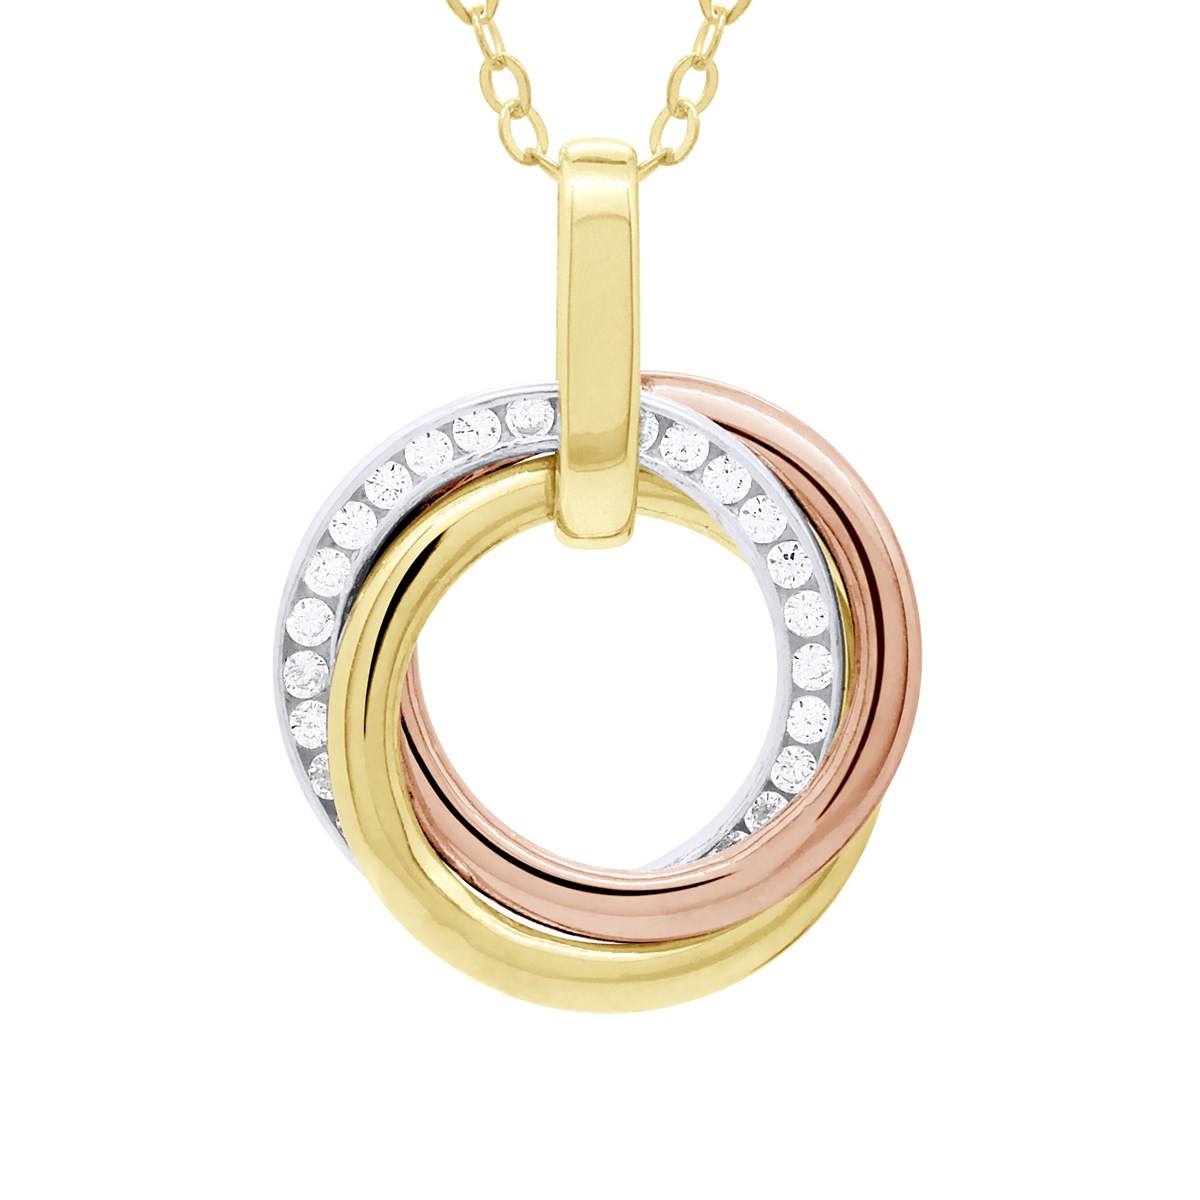 Collier Trois Ors - Ornées d'un Pendentif 3 anneaux - Fidélité, Amour et Éternité serti d' Oxydes de Zirconium